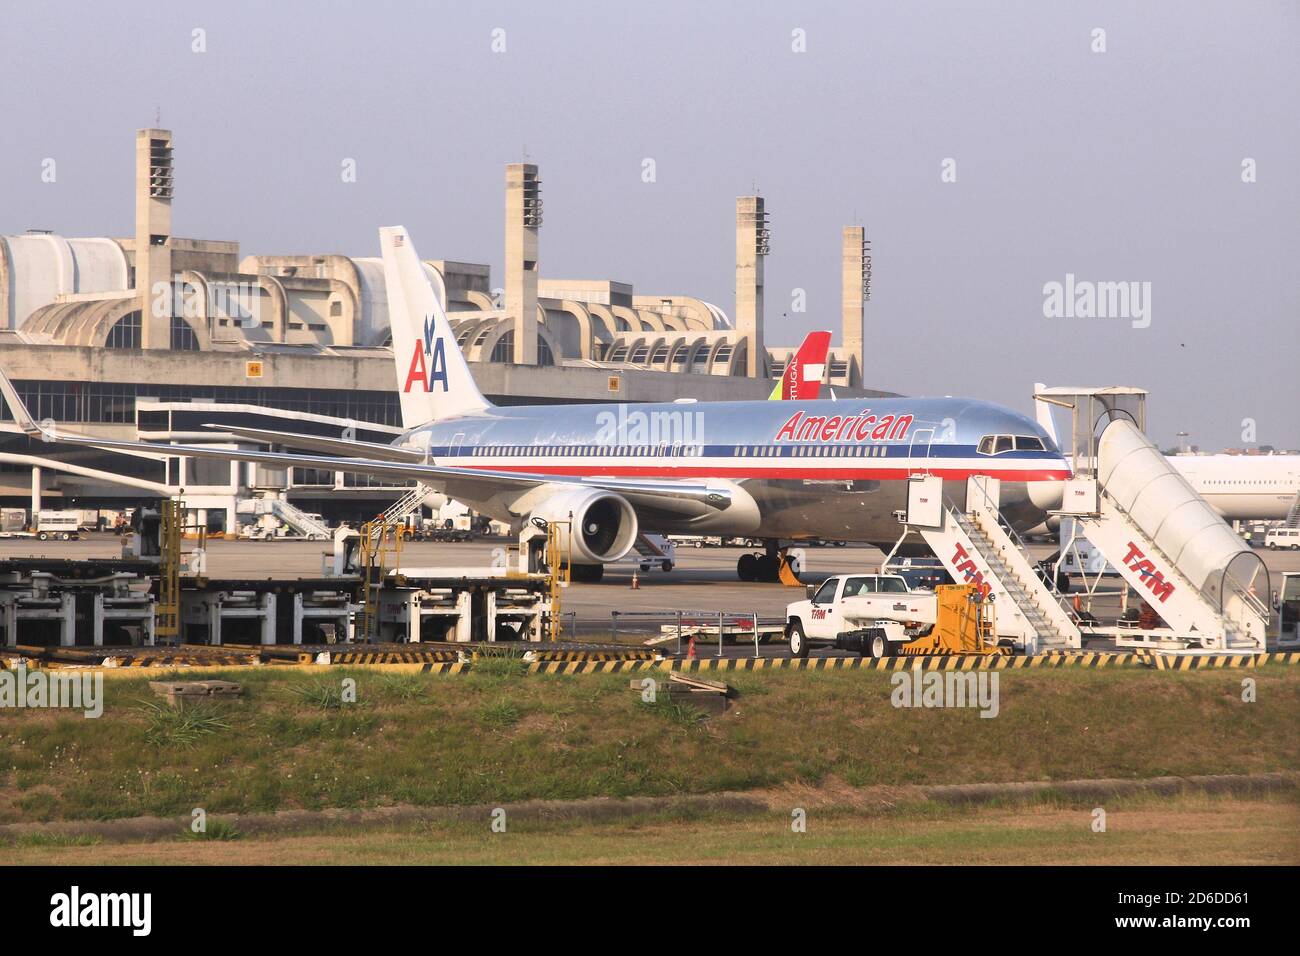 SAO PAULO, BRASILIEN - 12. OKTOBER 2014: American Airlines Boeing 767 am Flughafen Guarulhos in Sao Paulo. Der Flughafen hat im Jahr 2019 43 Millionen Passagiere bedient Stockfoto